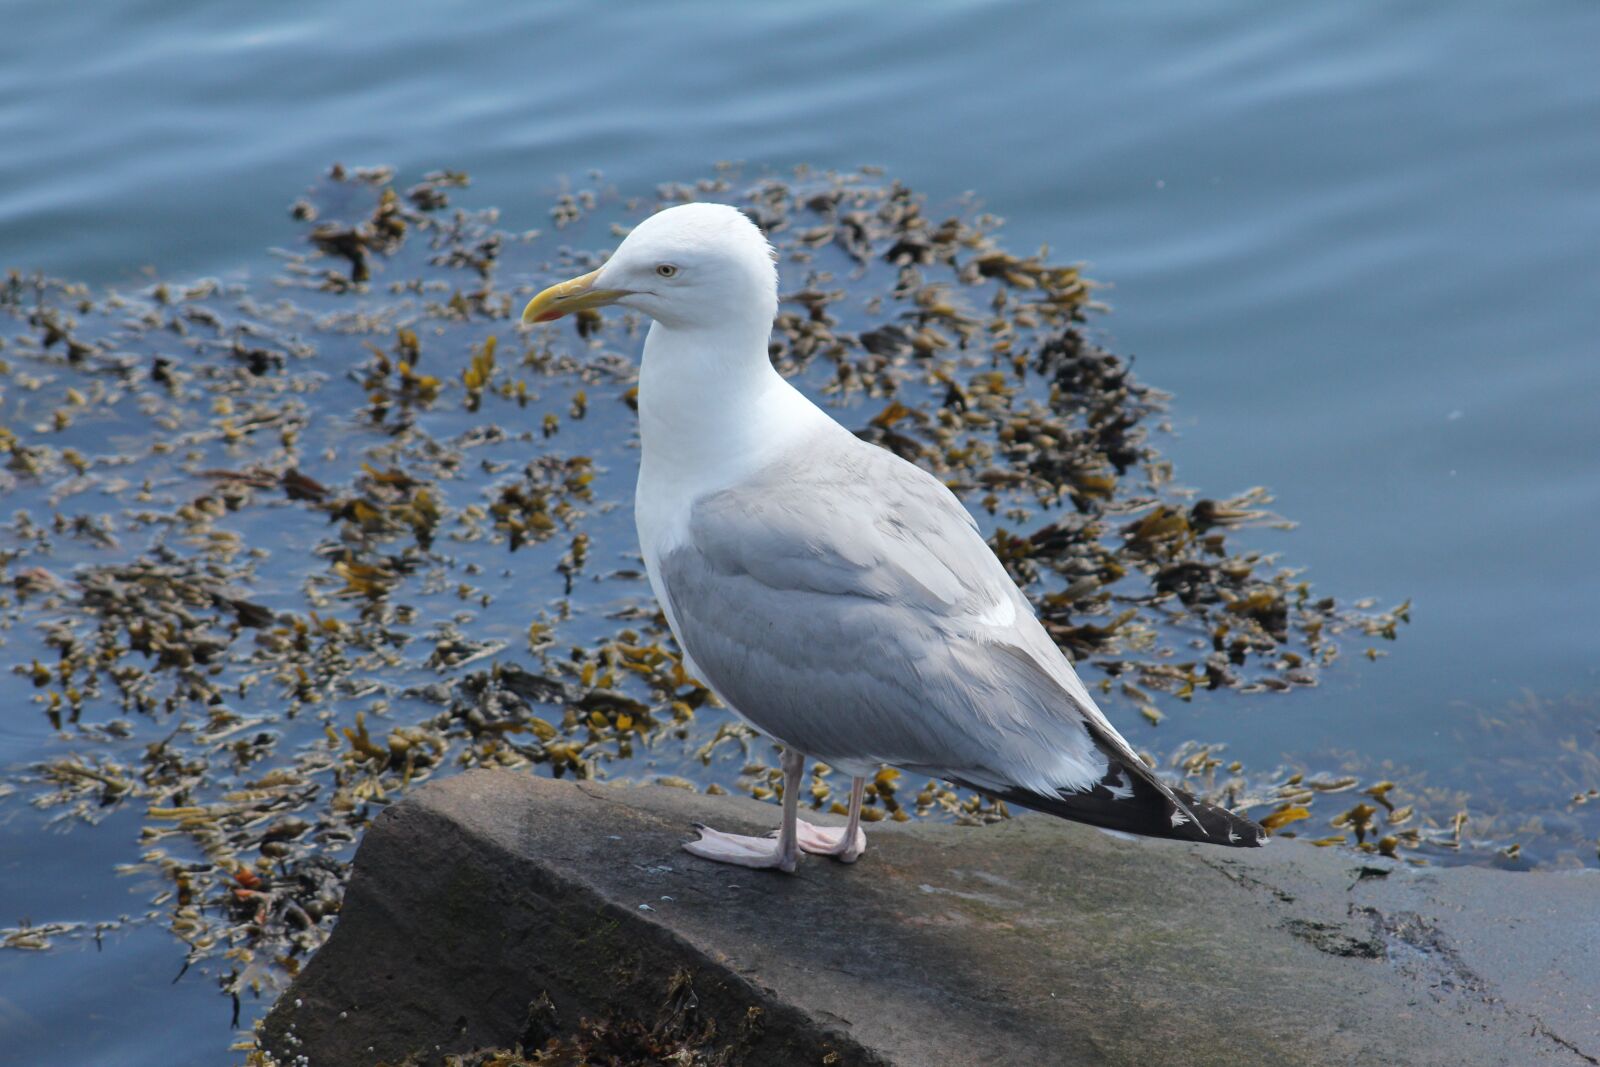 Canon EOS 60D sample photo. Seagull, bird, ocean photography